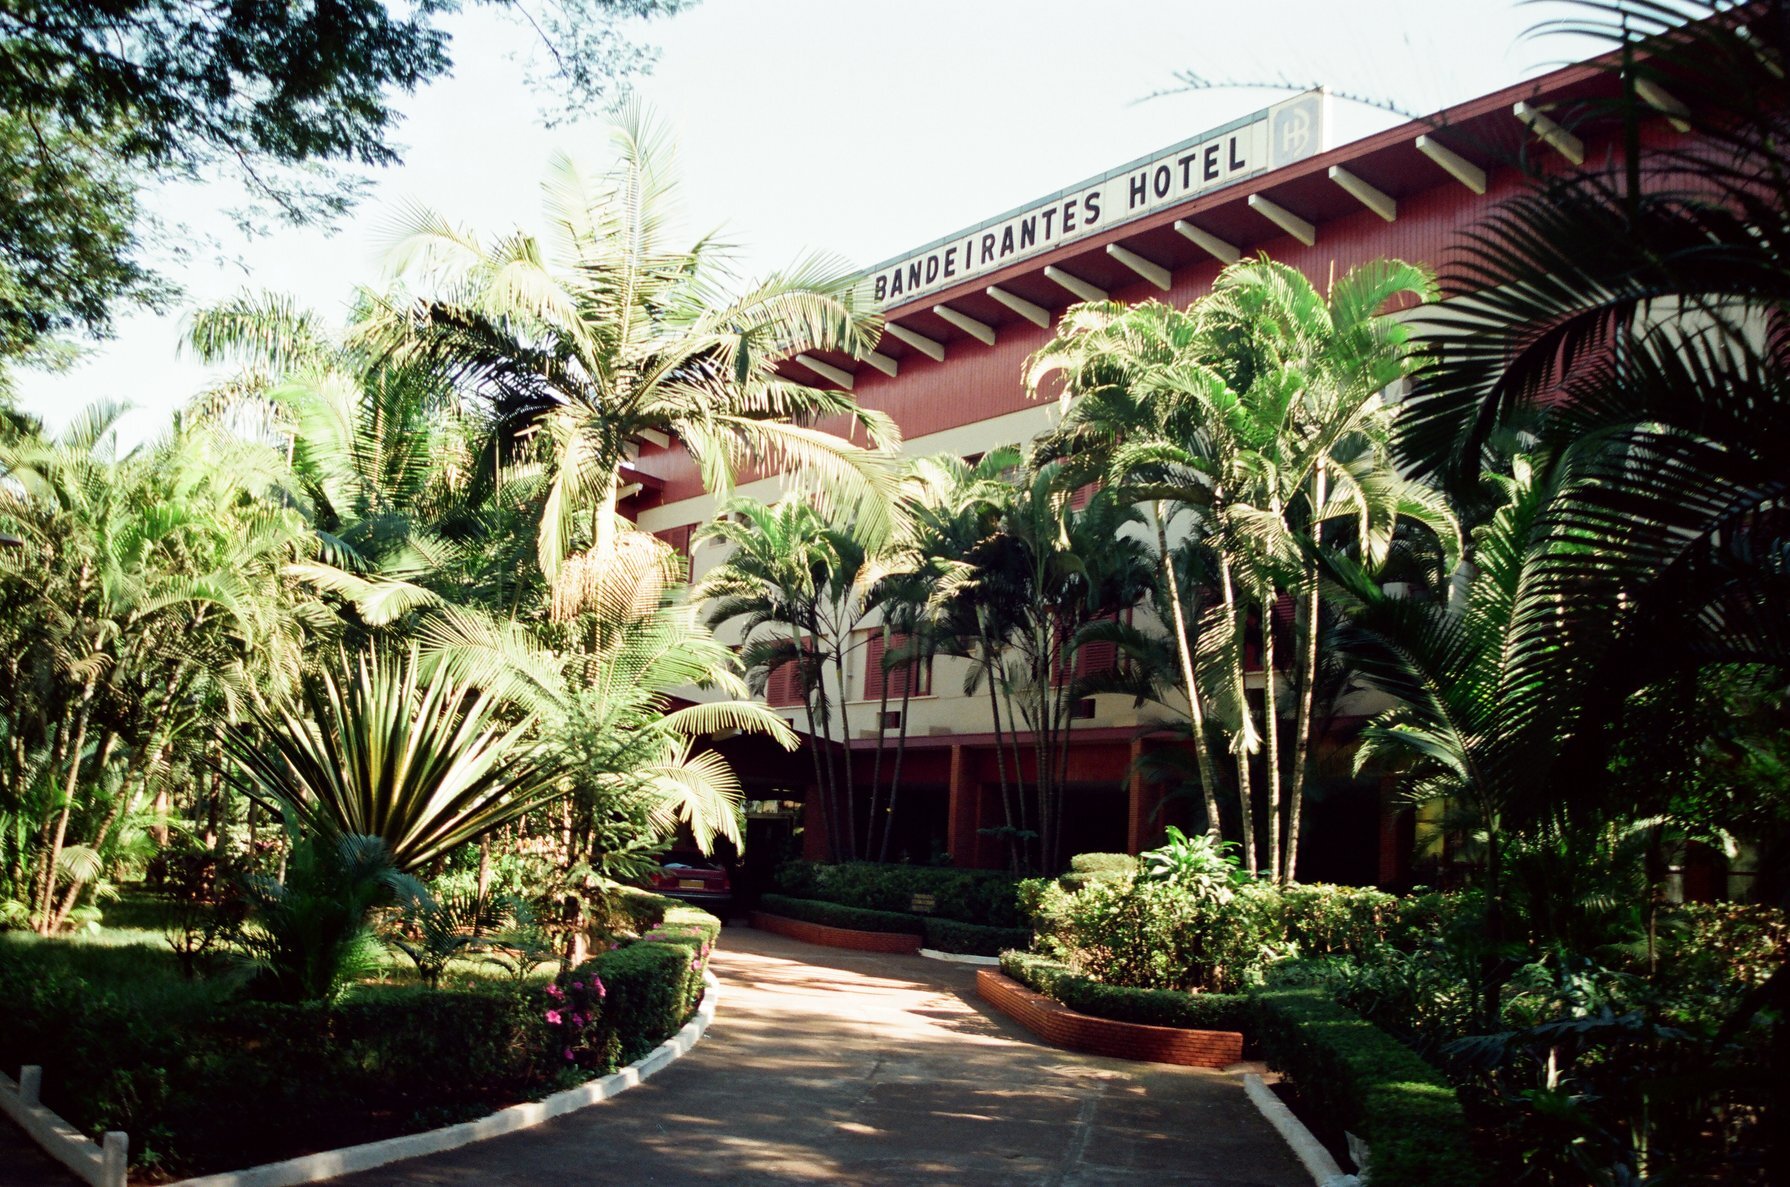 Maringá Bandeirantes Hotel - Início dos anos 1990